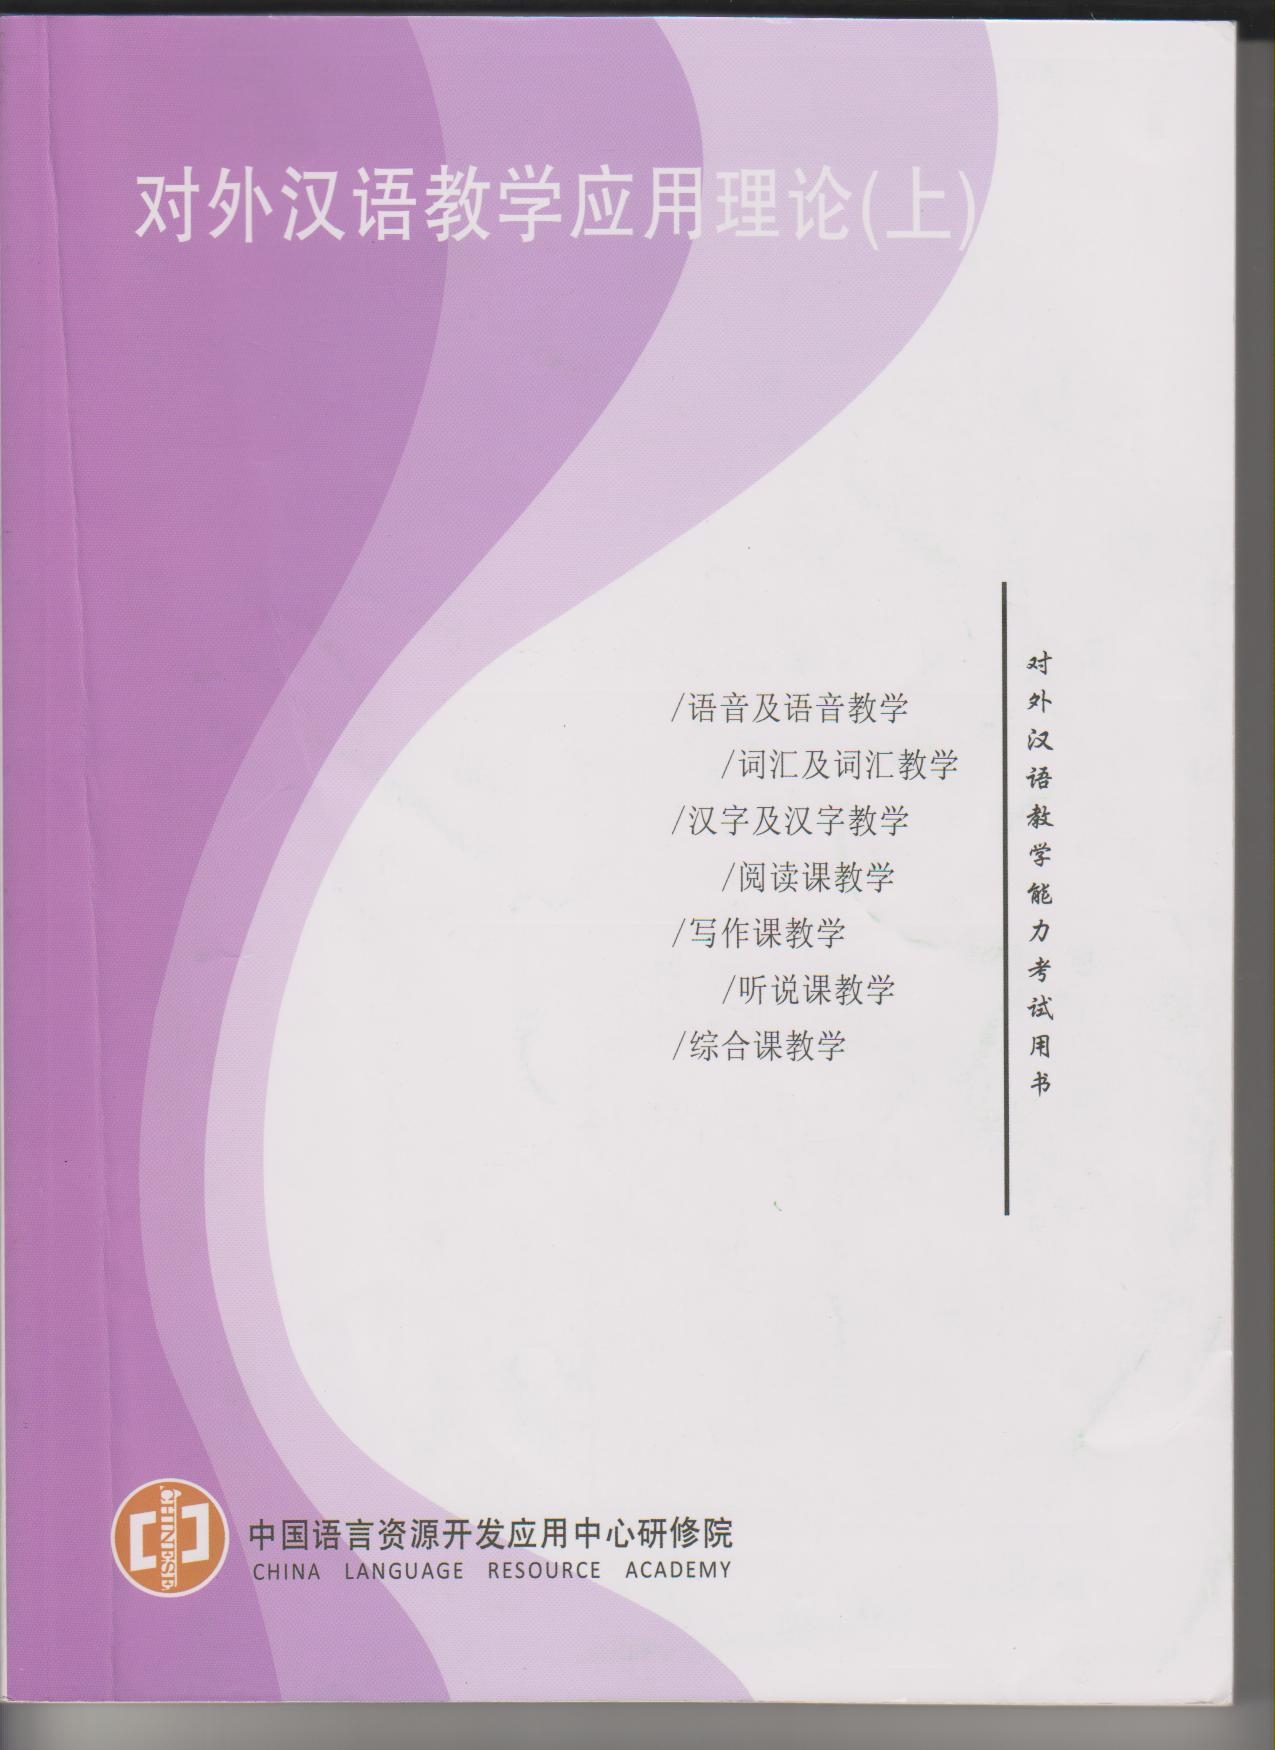 국제한어교사자격교과서(상)